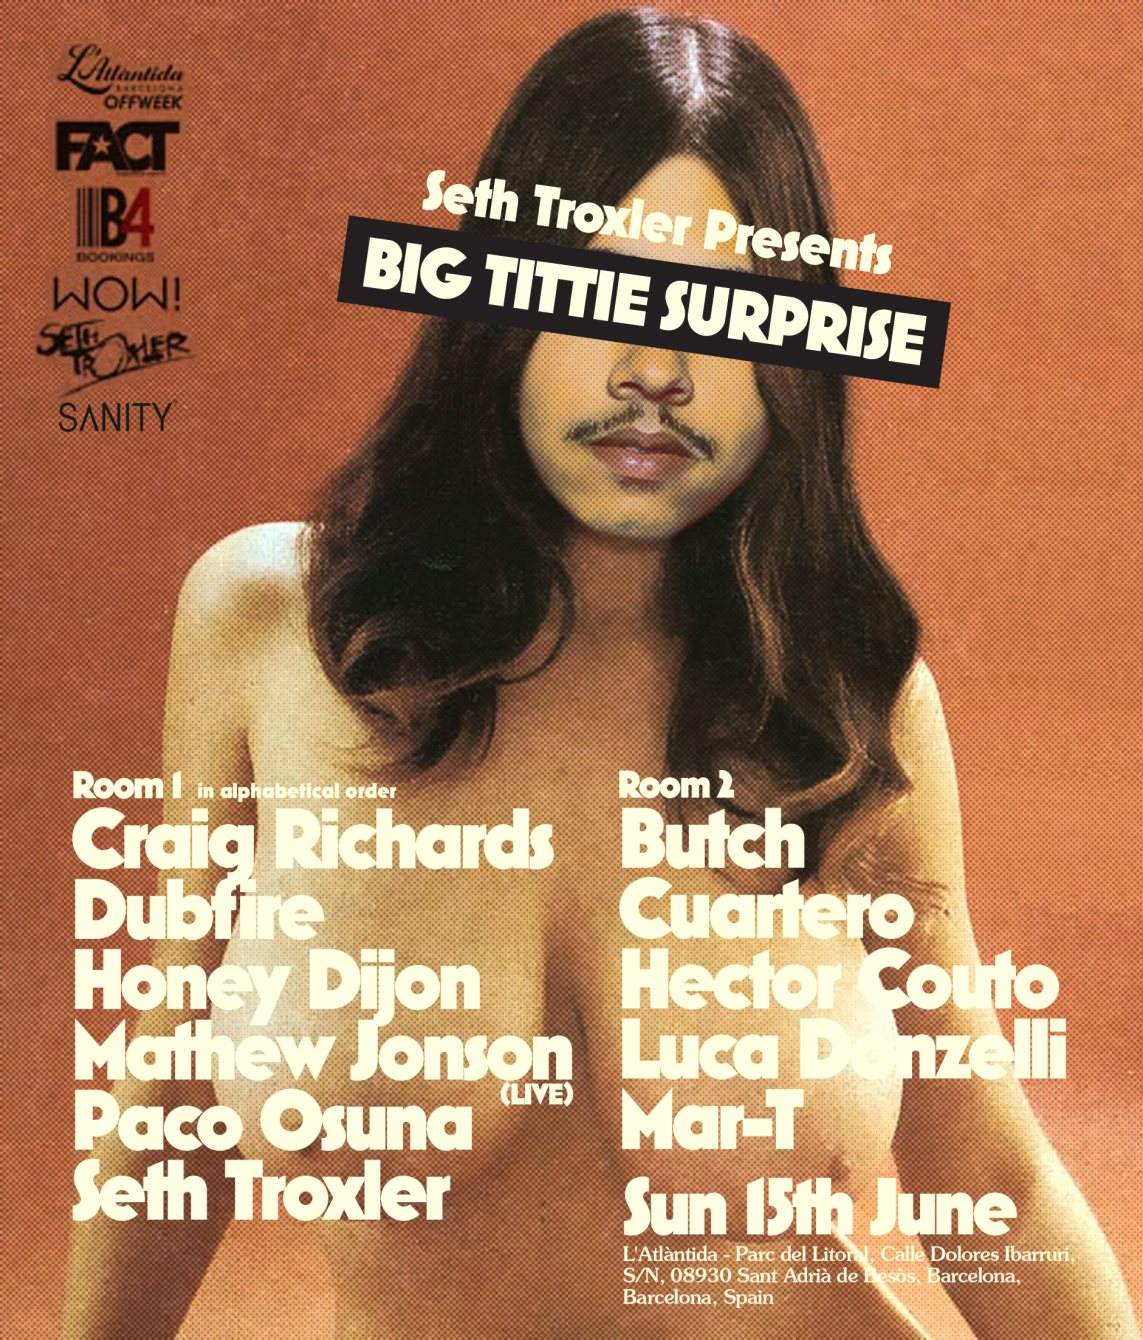 Seth Troxler presents Big Tittie Surprise - Página frontal